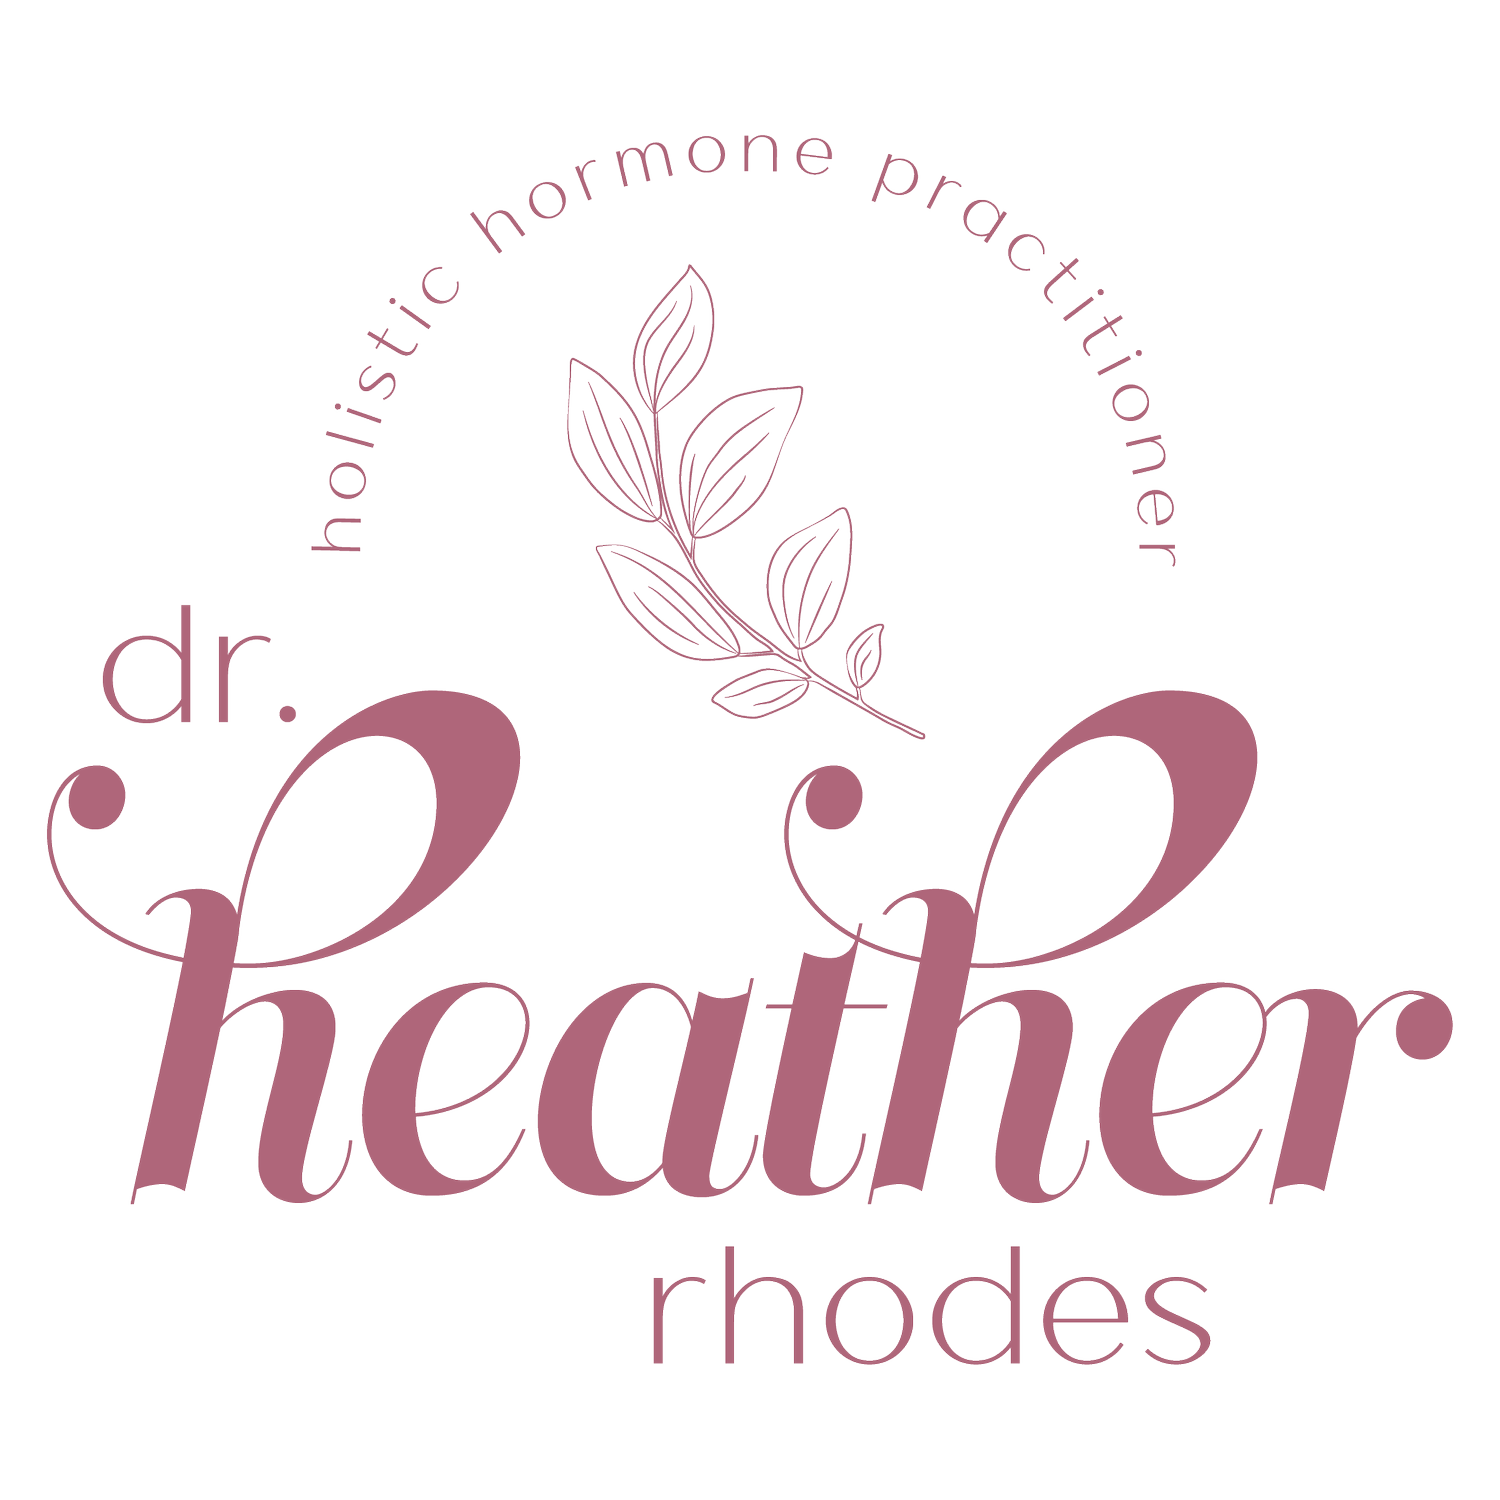 Dr. Heather Rhodes